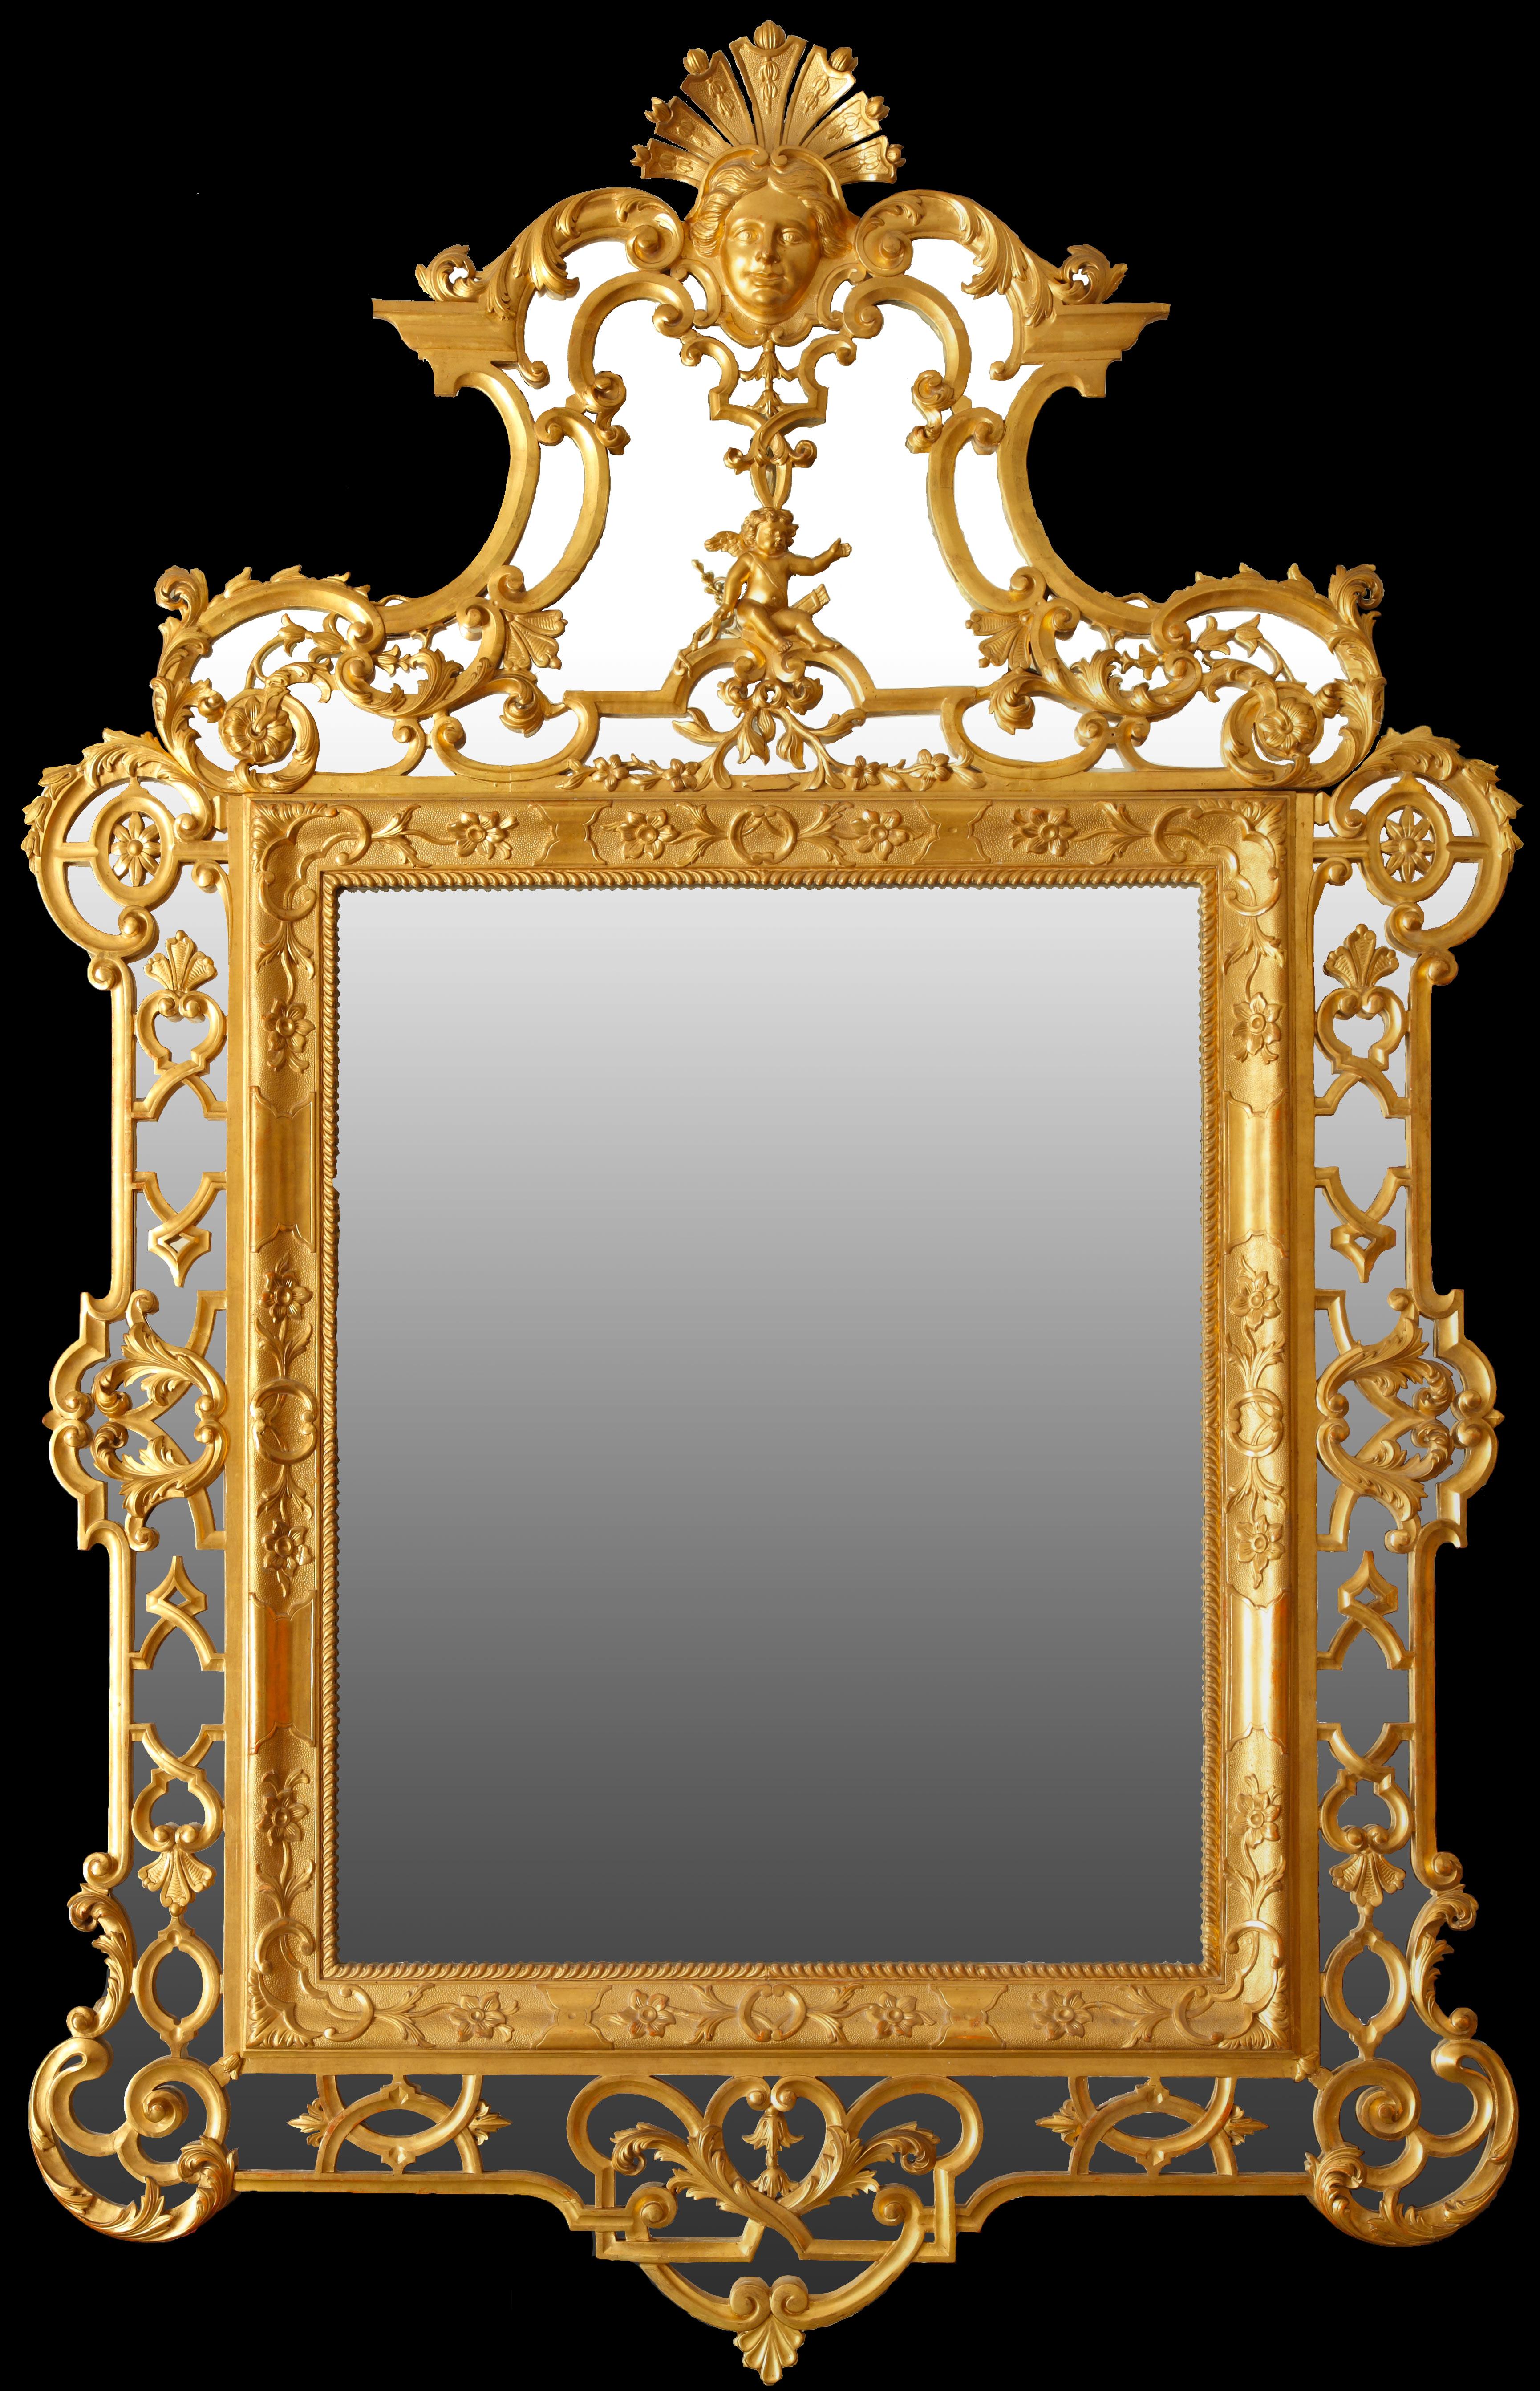 Un important miroir en bois doré sculpté avec un riche cadre magnifiquement décoré d'arabesques. Le sommet est richement orné d'un chérubin et surmonté d'un masque sur une coquille étalée. L'ensemble est abondamment sculpté de rinceaux, de fleurs et